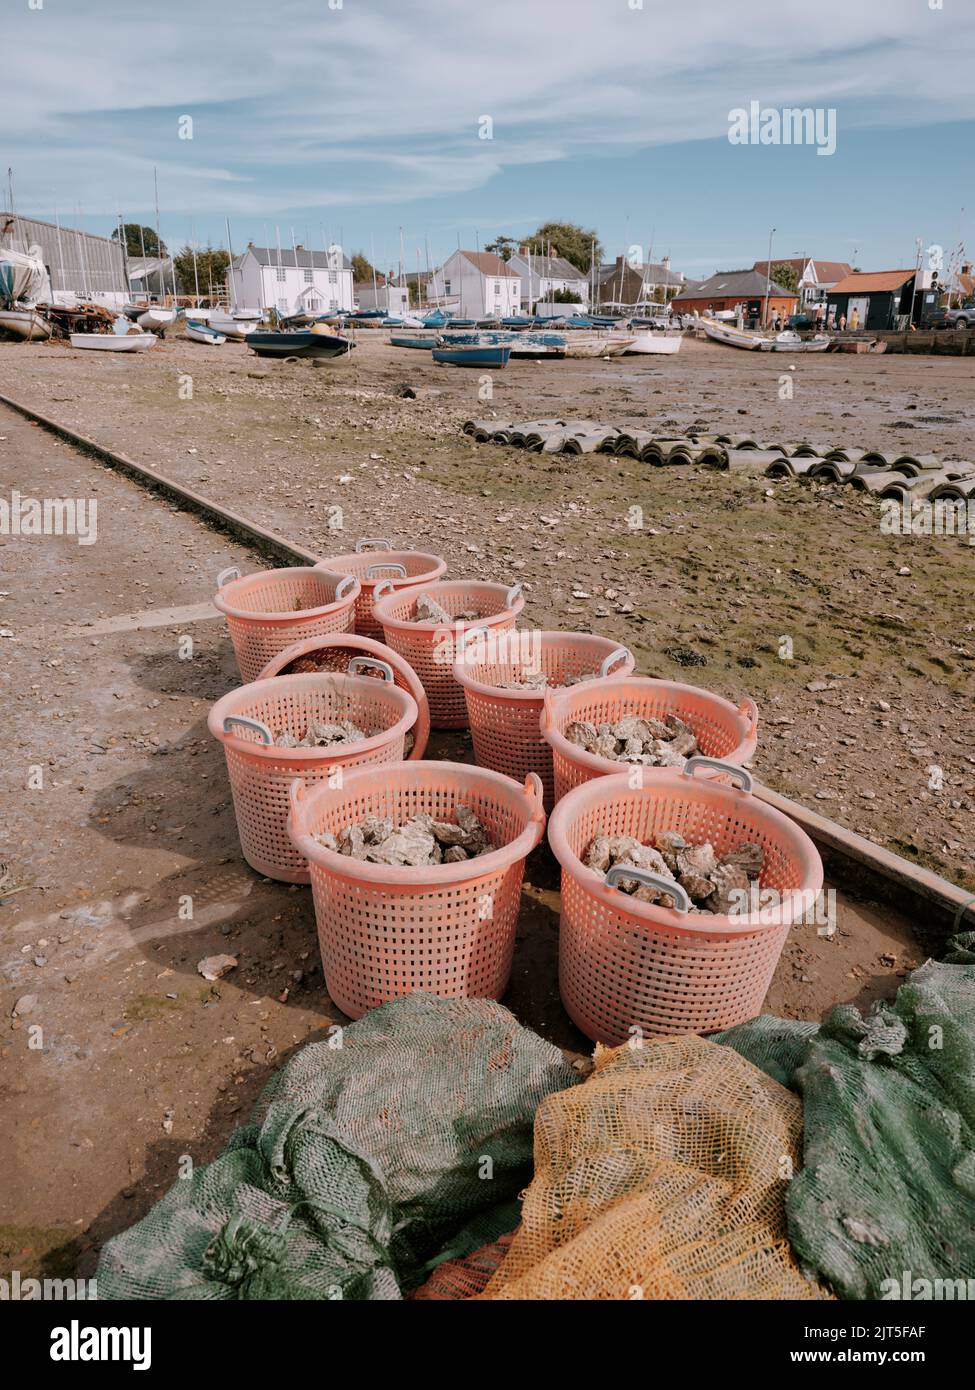 Frisch angelandete Austern in Plastikbehältern am Ebbe-Vorland im West Mersea Harbour, Mersea Island, Essex England - lokale Produkte Meeresfrüchte Stockfoto